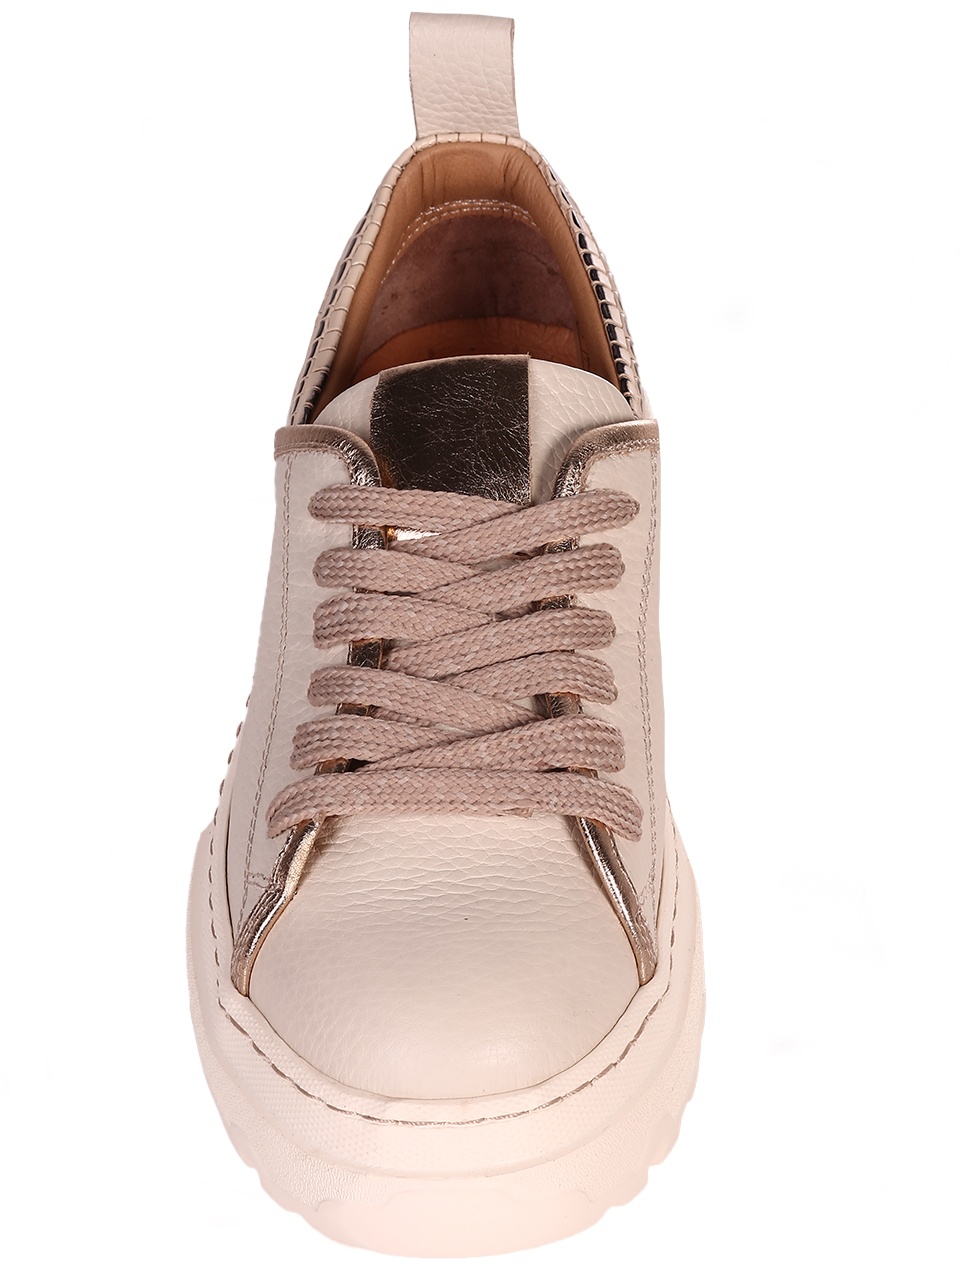 Ежедневни дамски обувки на платформа от естествена кожа 3AT-24332 beige